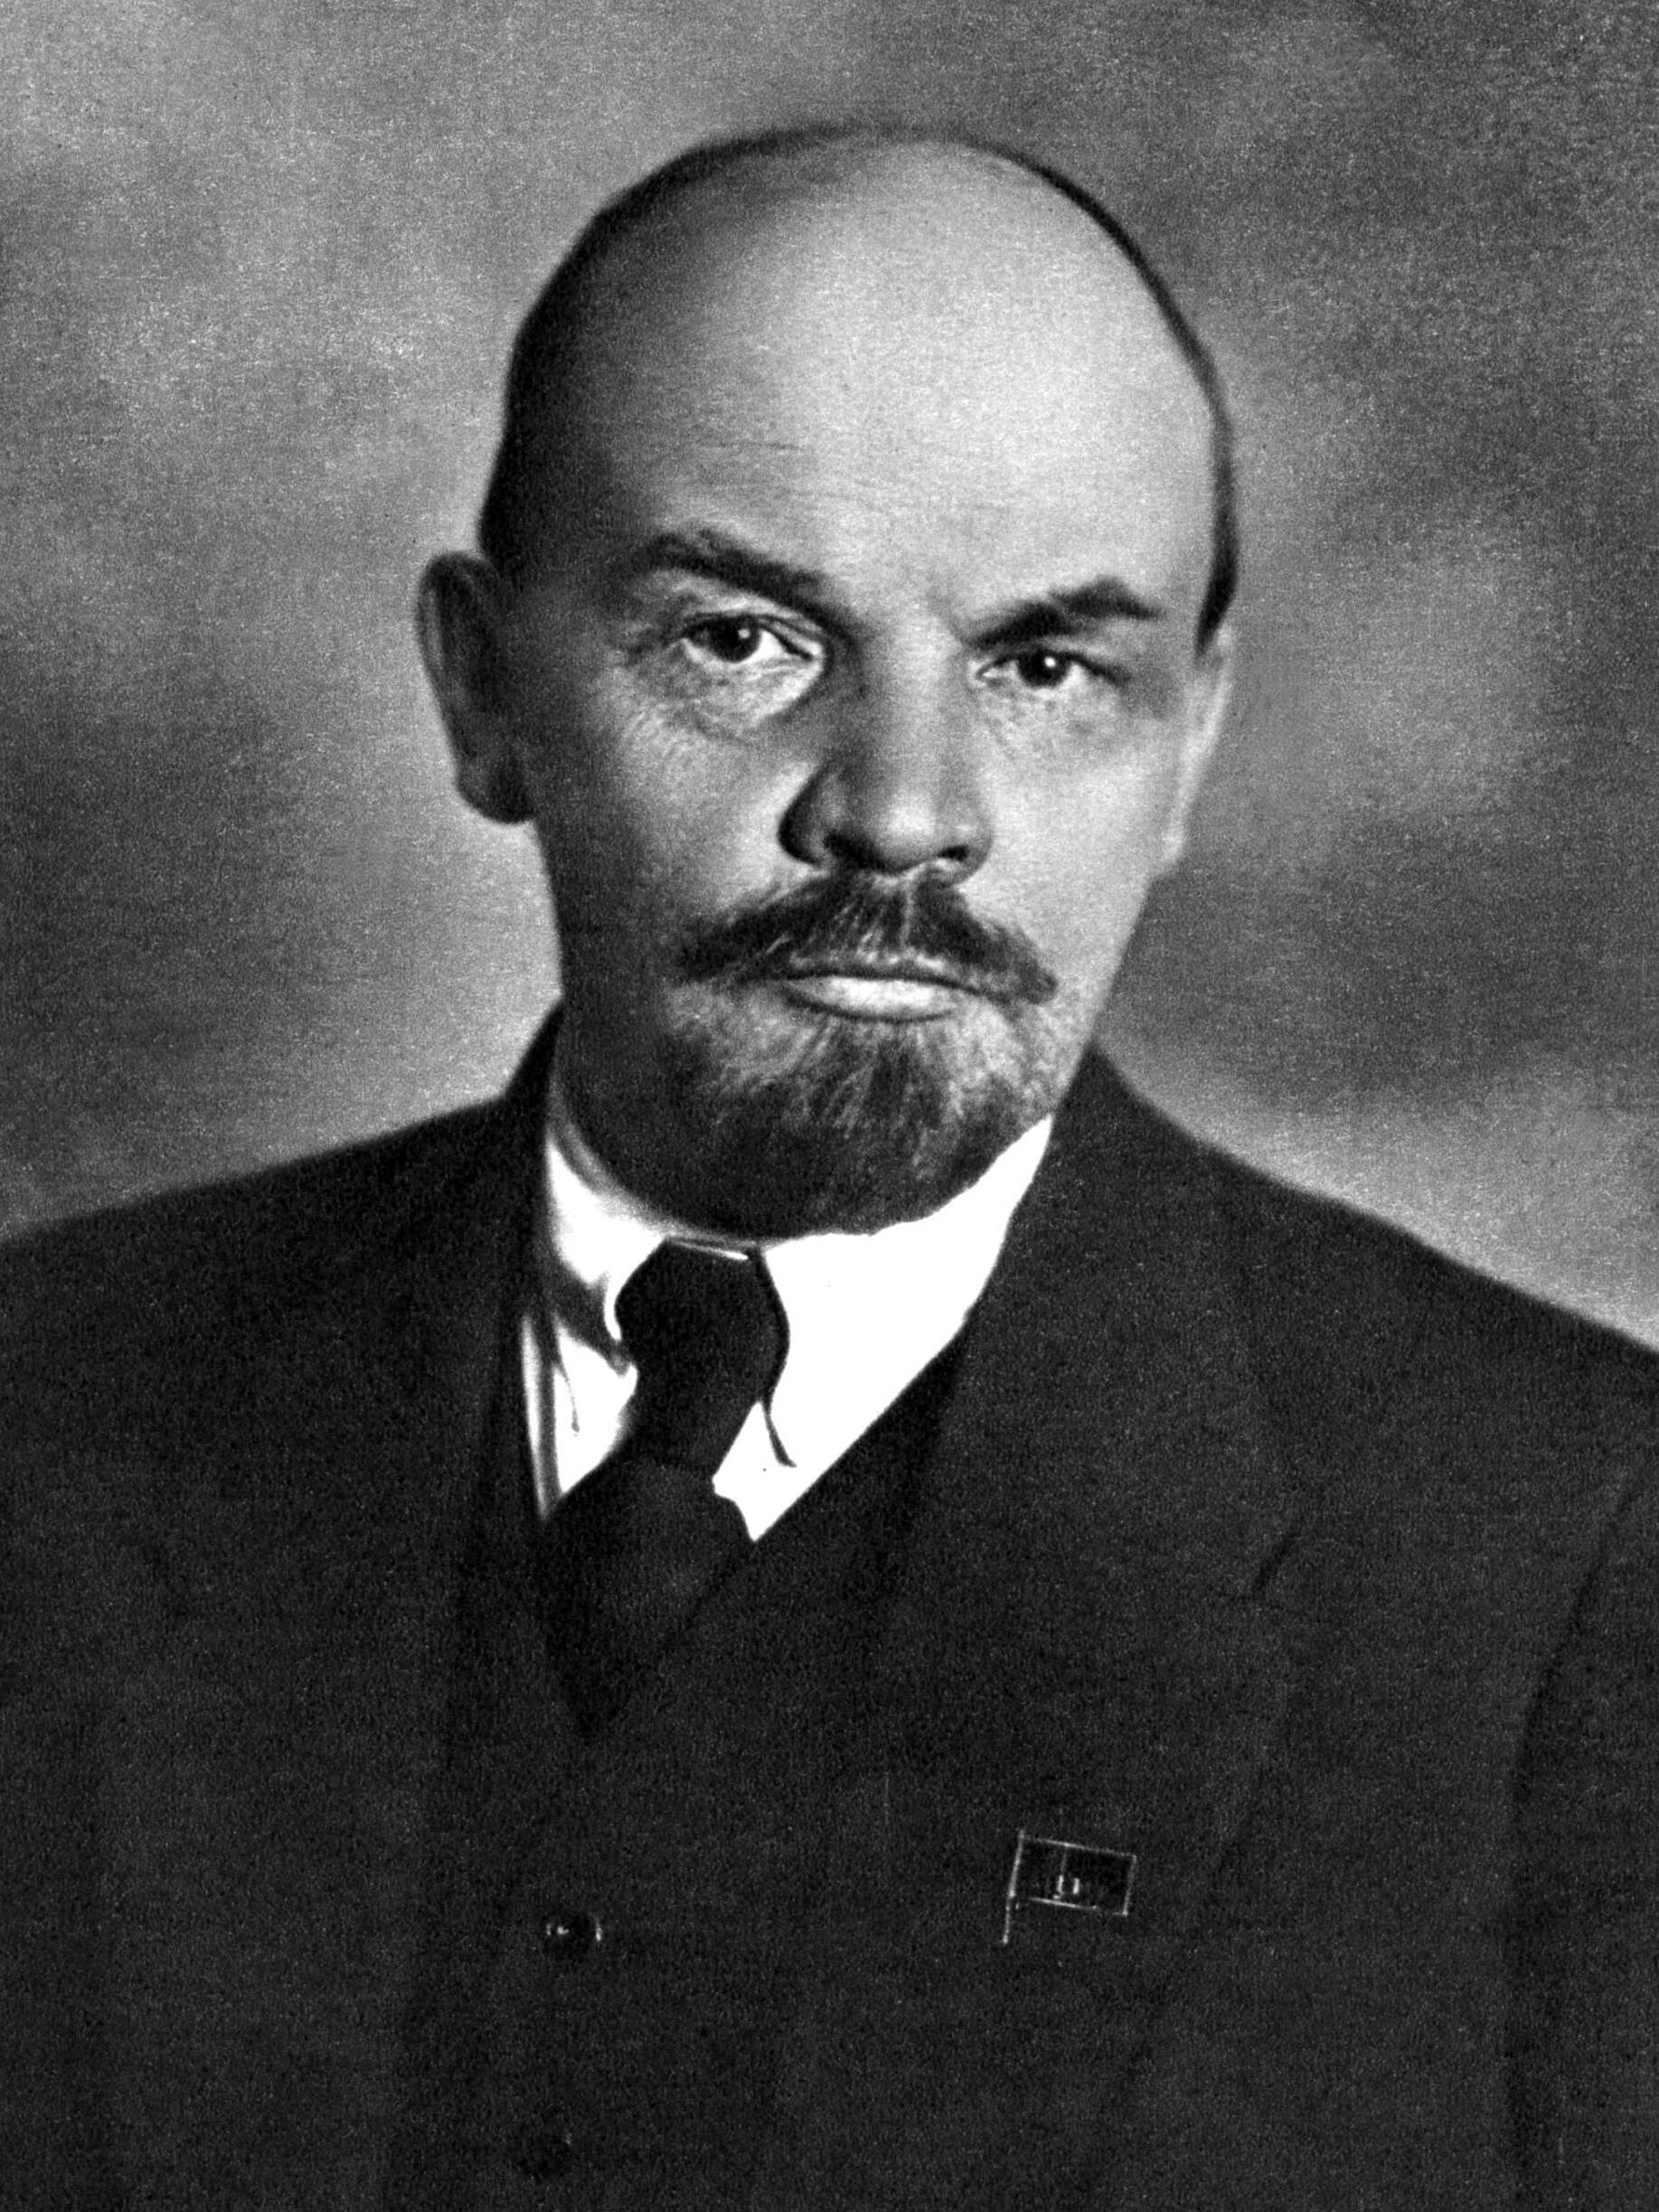 Lenin: revolucionario que moldeó naciones. ¿Libertador o tirano? Descubre cómo su visión reconfiguró el siglo XX.